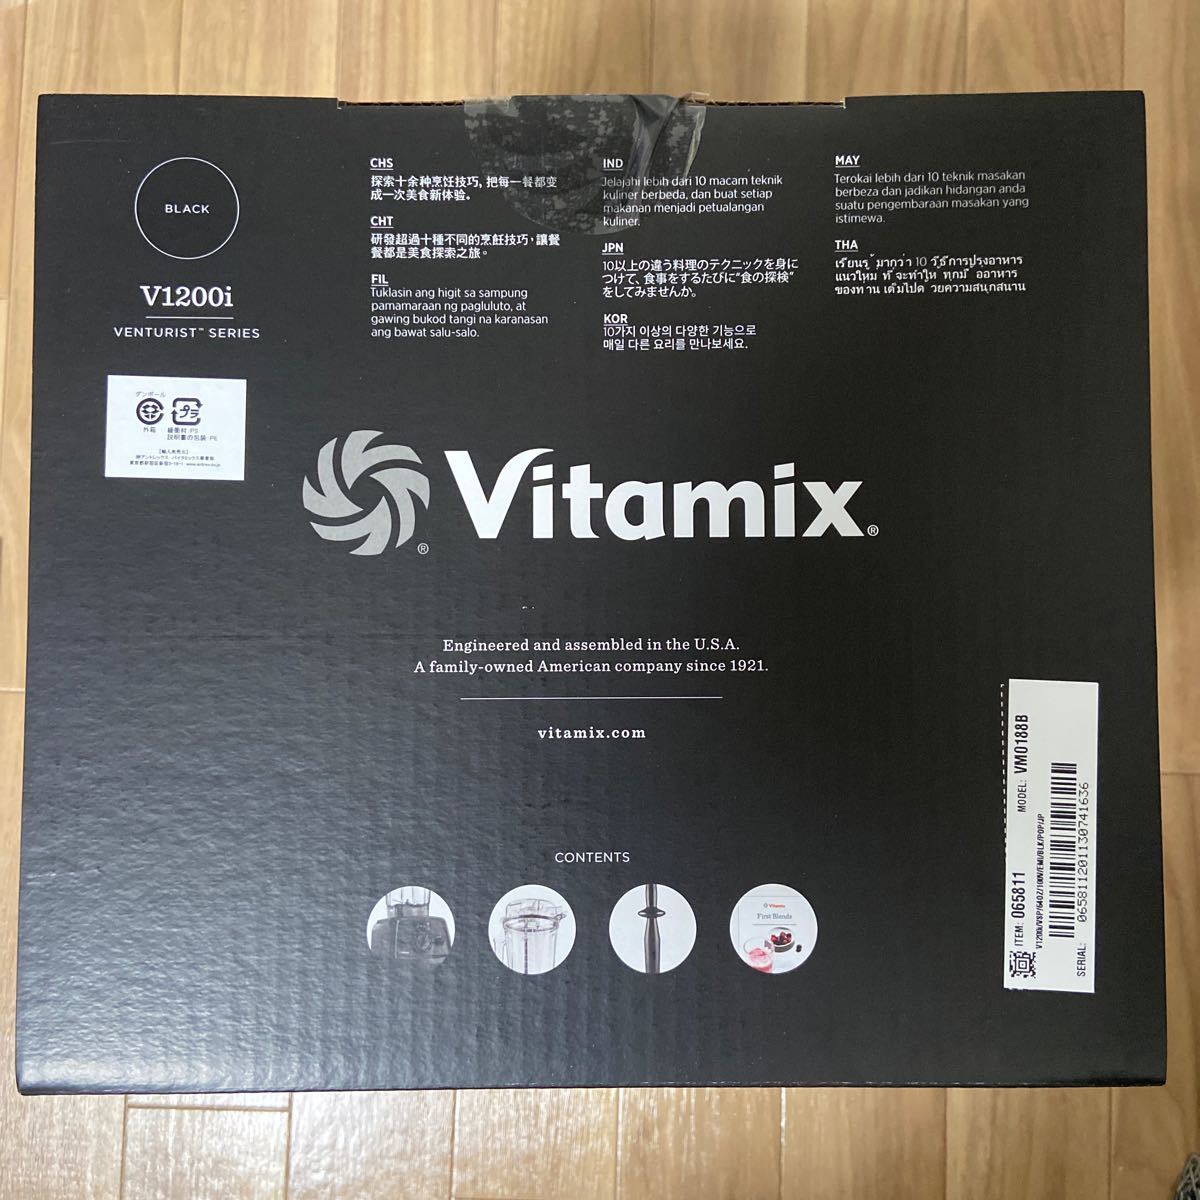  V1200i ミキサー 氷対応 スムージー ジューサー バイタミックス モデル Vitamix  フードプロセッサー 12cp